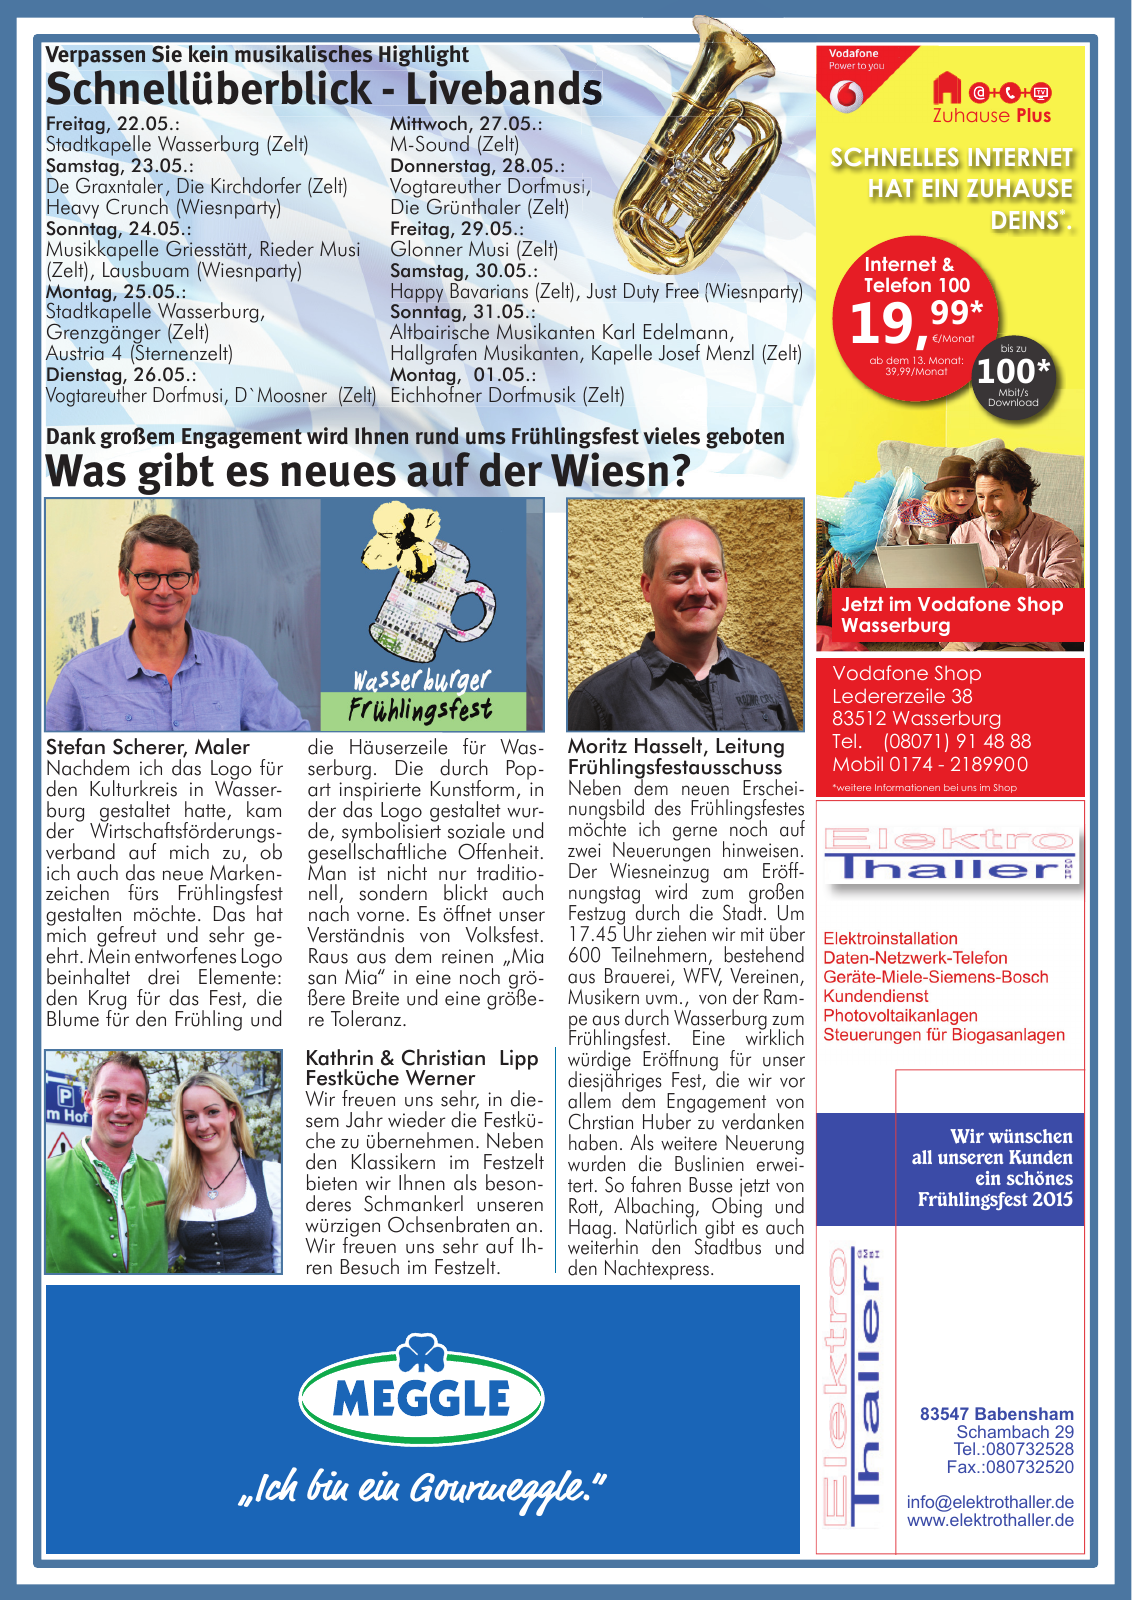 Vorschau Wasserburger Wiesnblattl 2015 Ausgabe 1 Seite 3